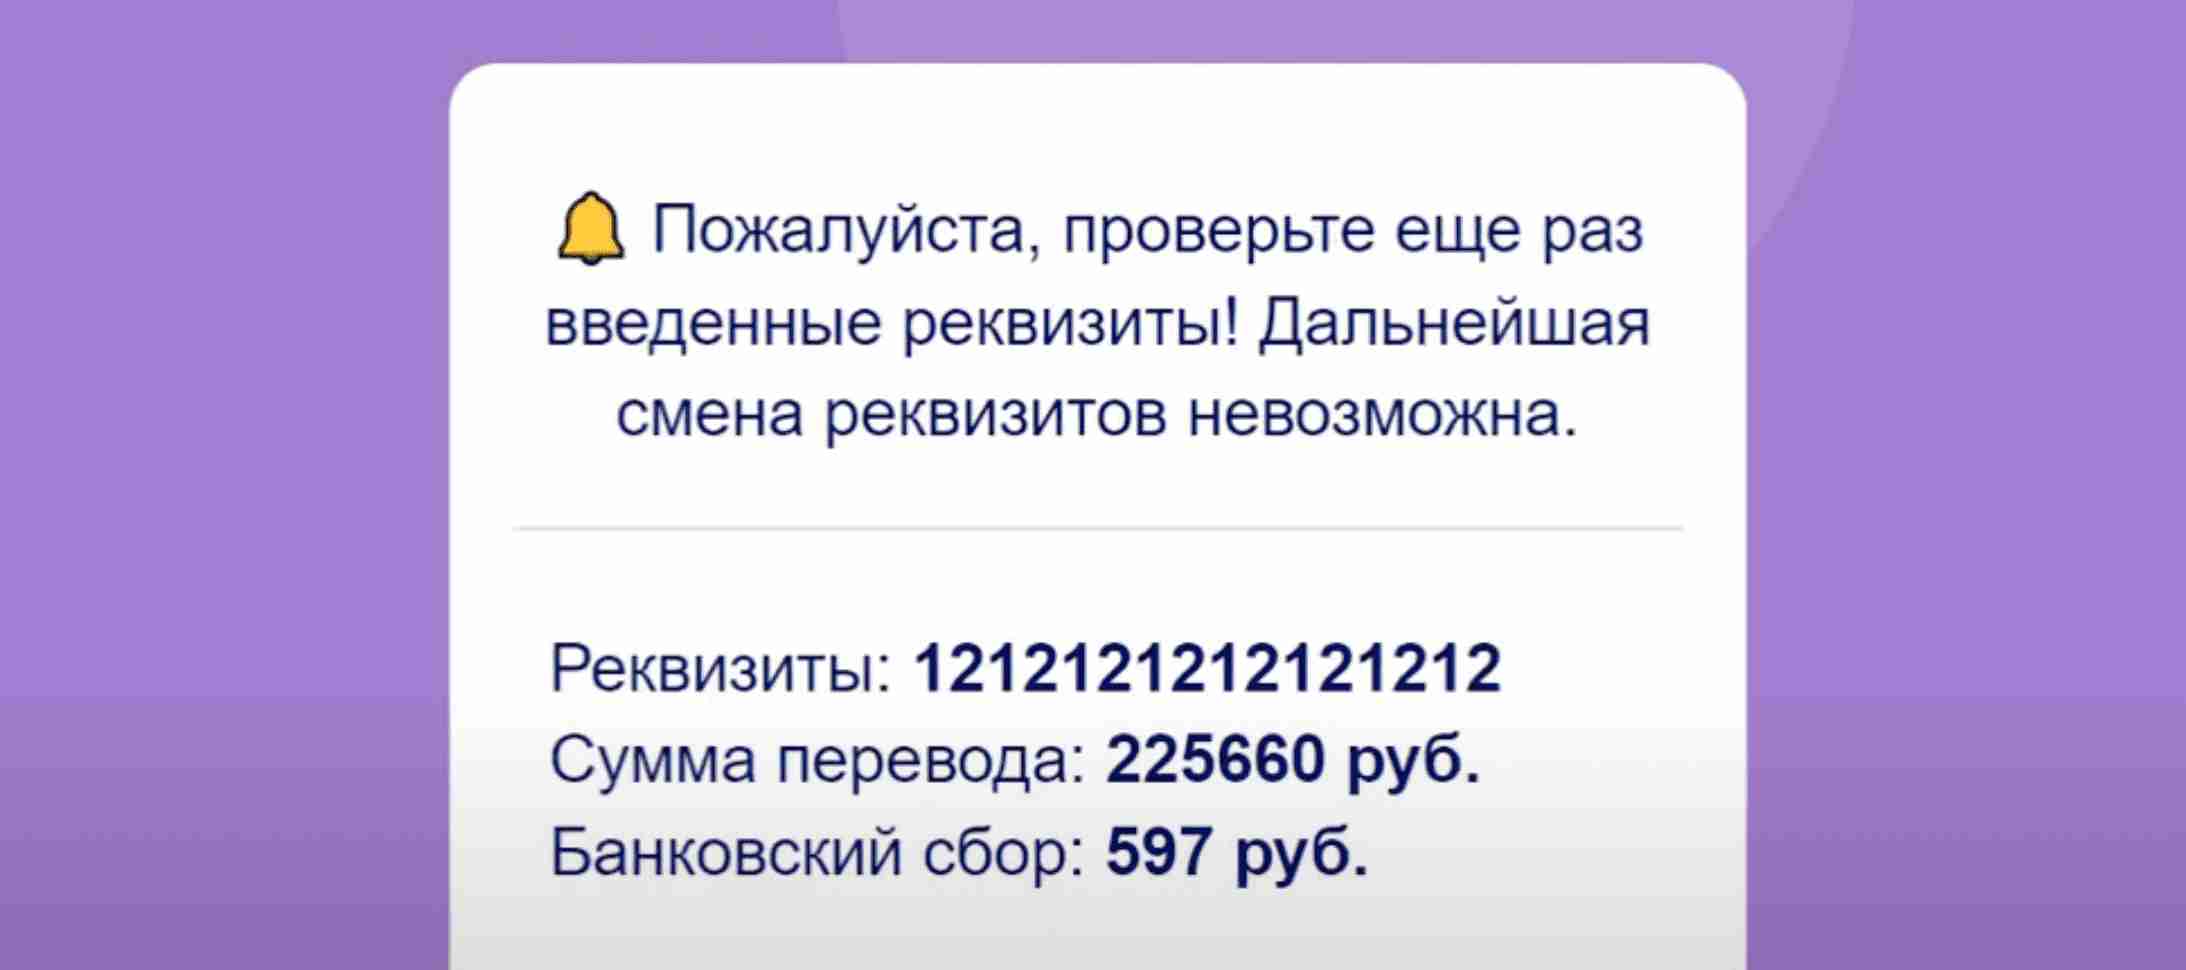 Розыгрыш призов Wildberries на 15 000 000 рублей — правда или развод?